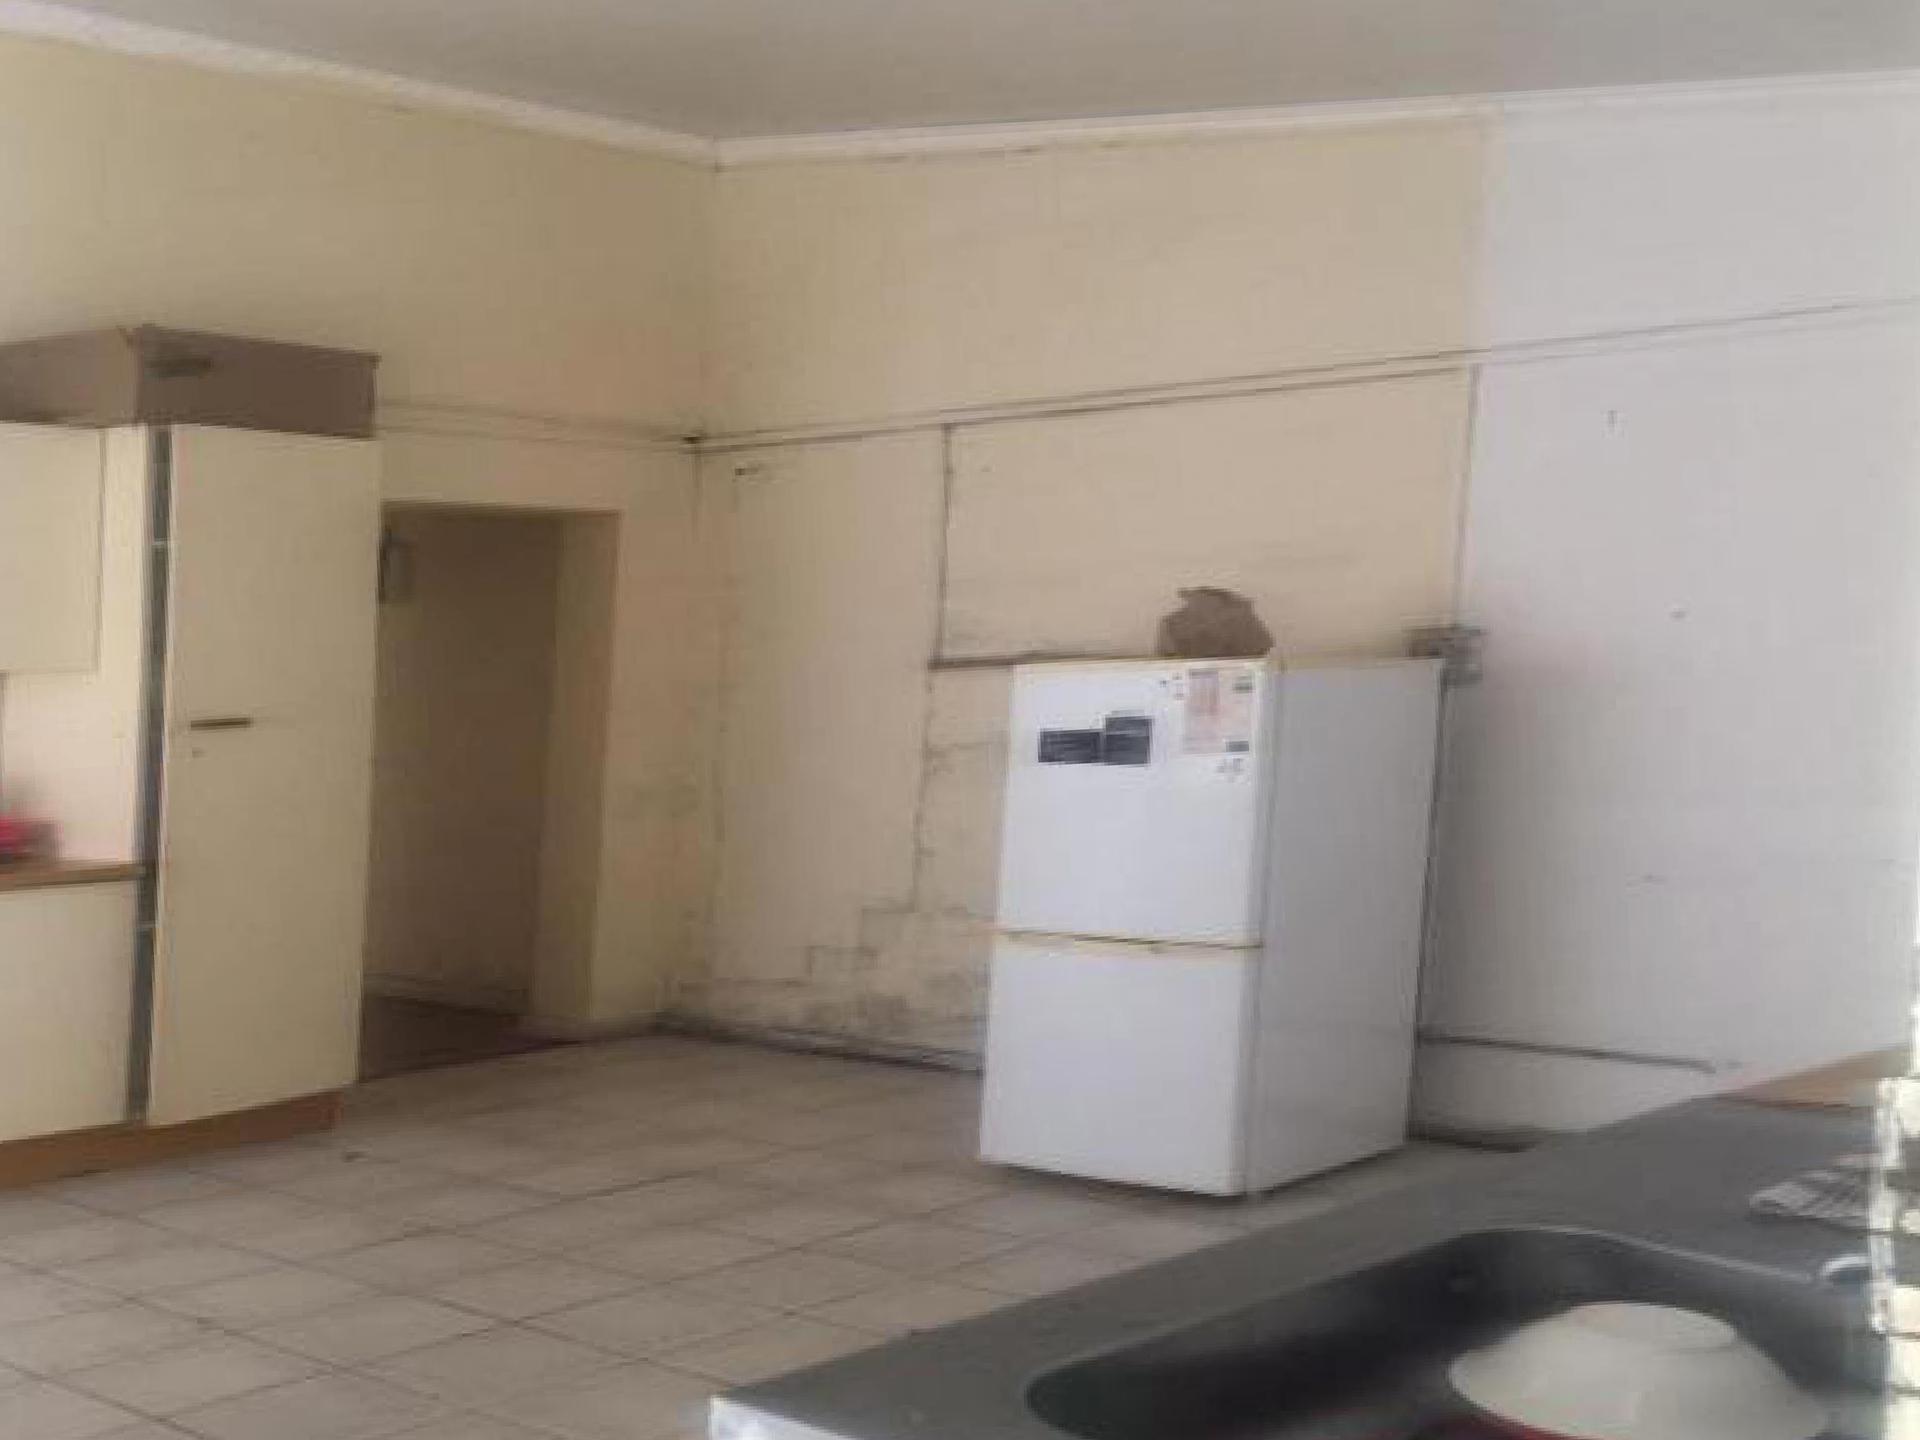 Kitchen of property in Khayelitsha